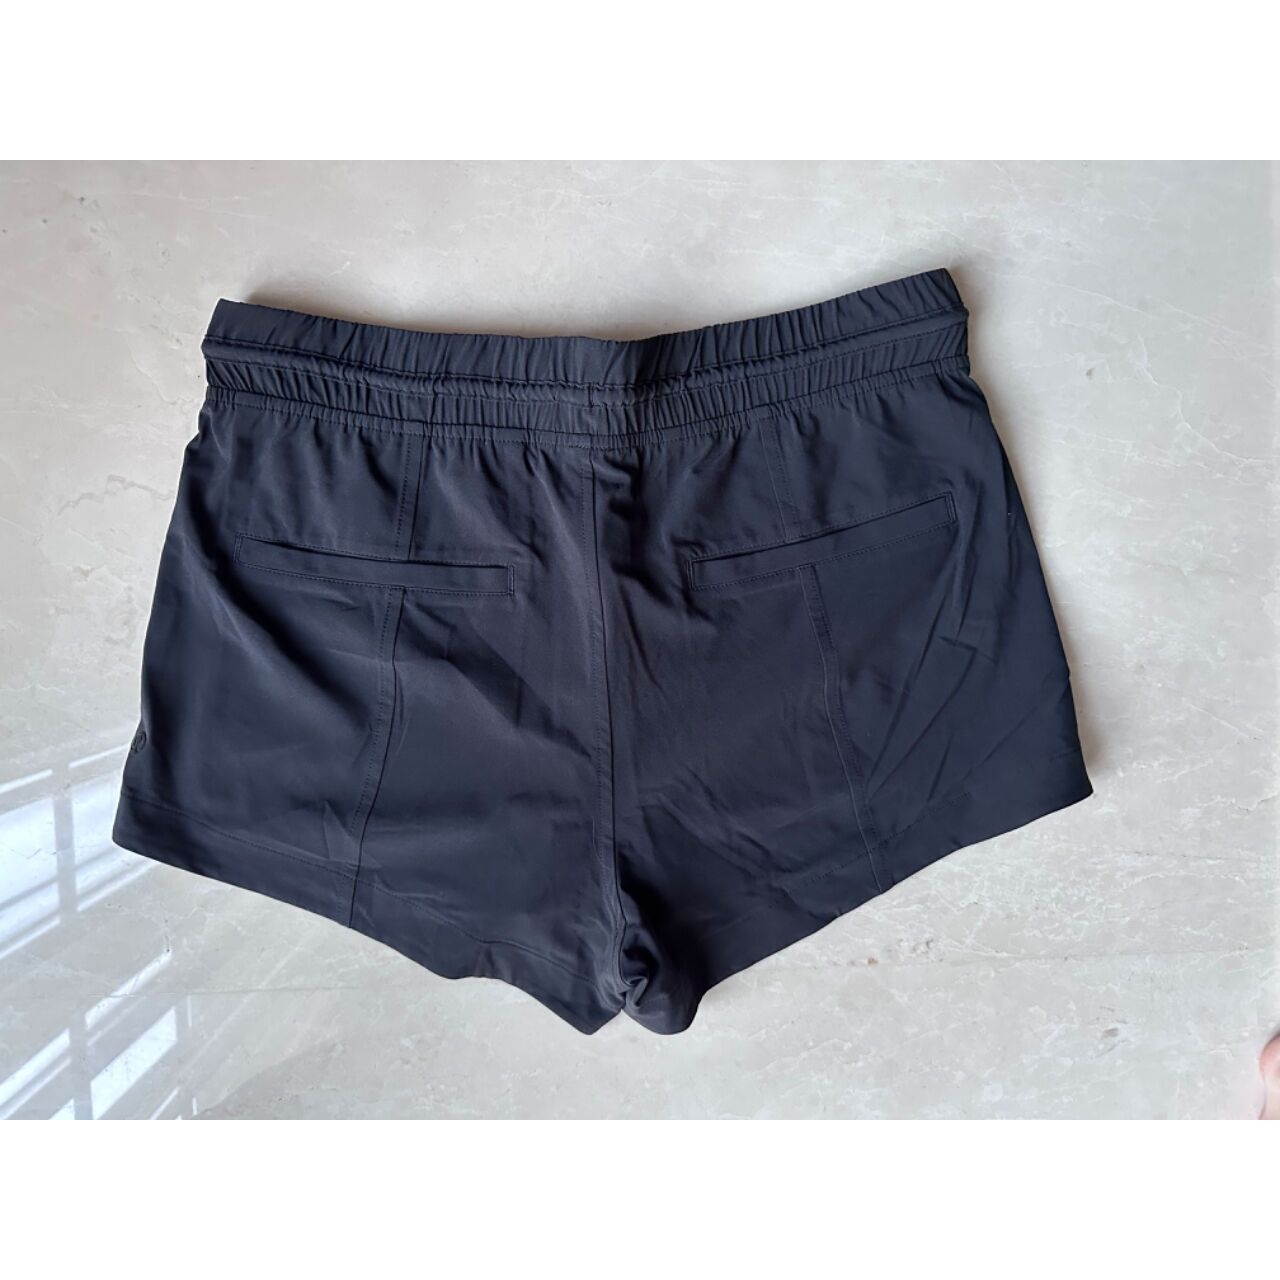 lululemon Black Shorts